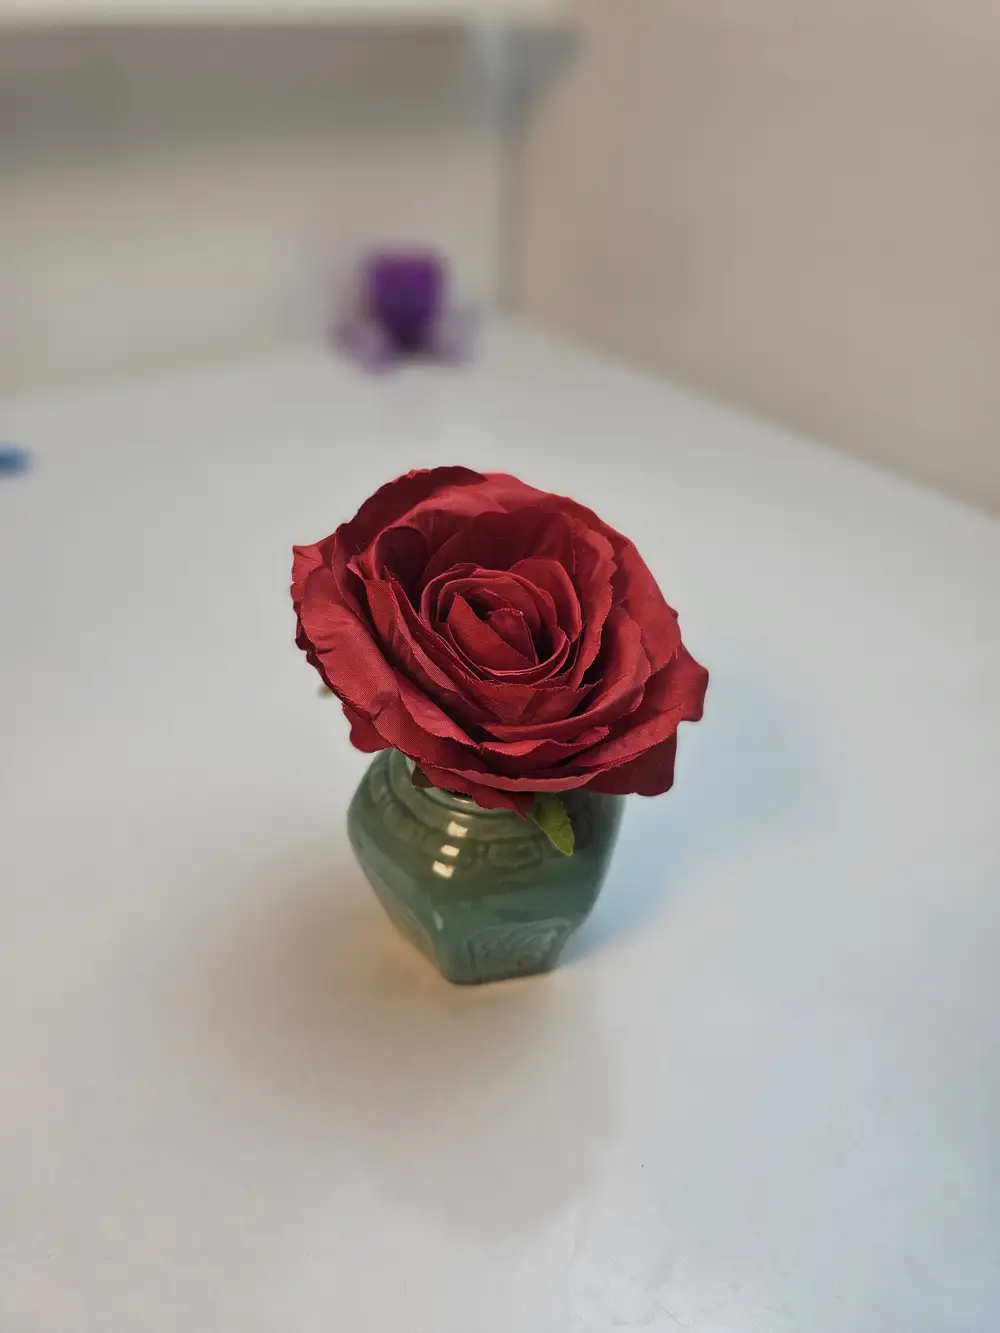 Red rose in a vase